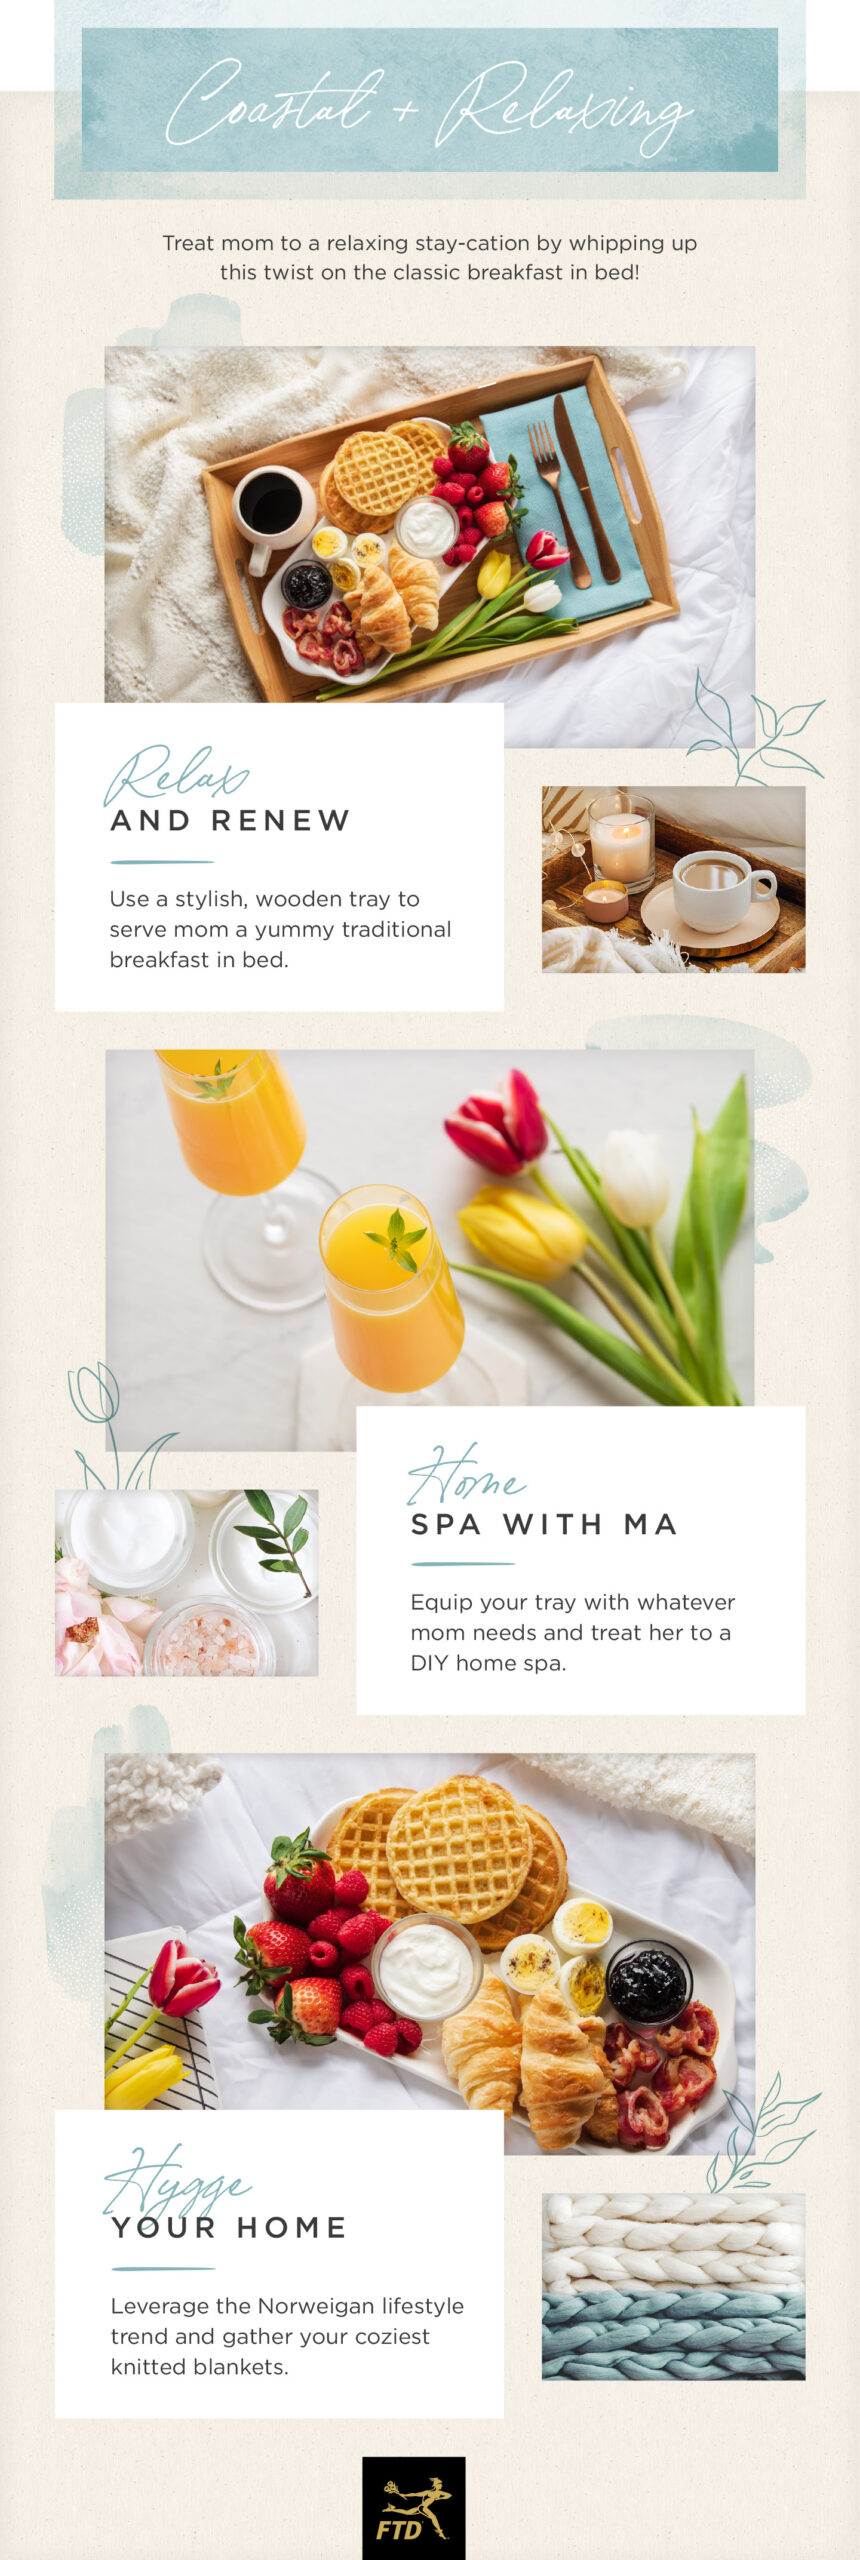 Mother's Day Breakfast Board Ideas